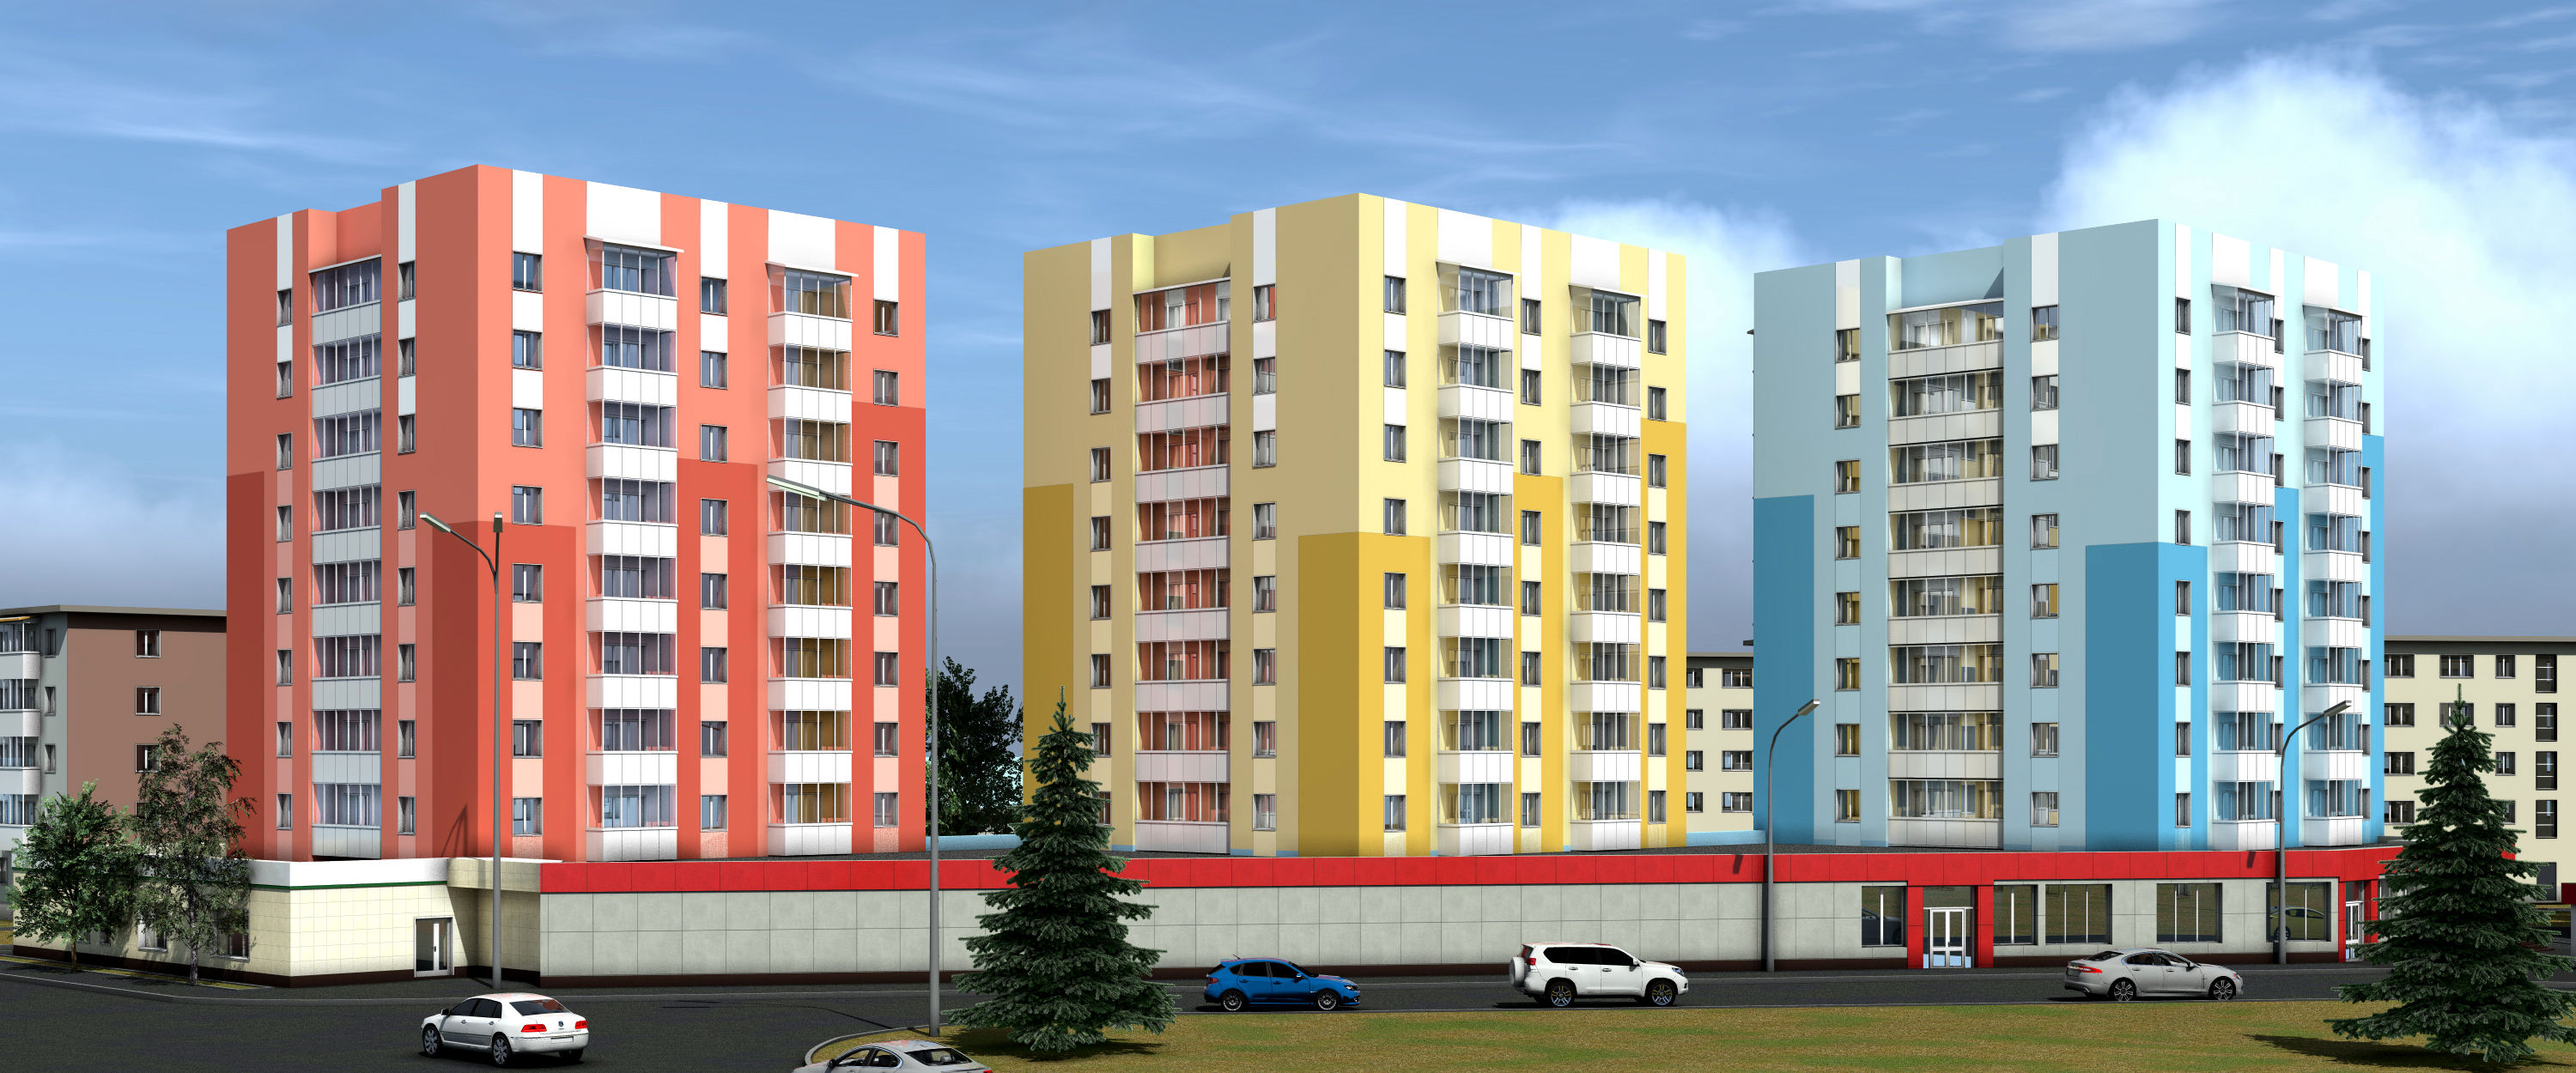 Цветовые решения по фасадам домов на ул. Гагарина вынесены на обсуждение в рамках интерактивного опроса 